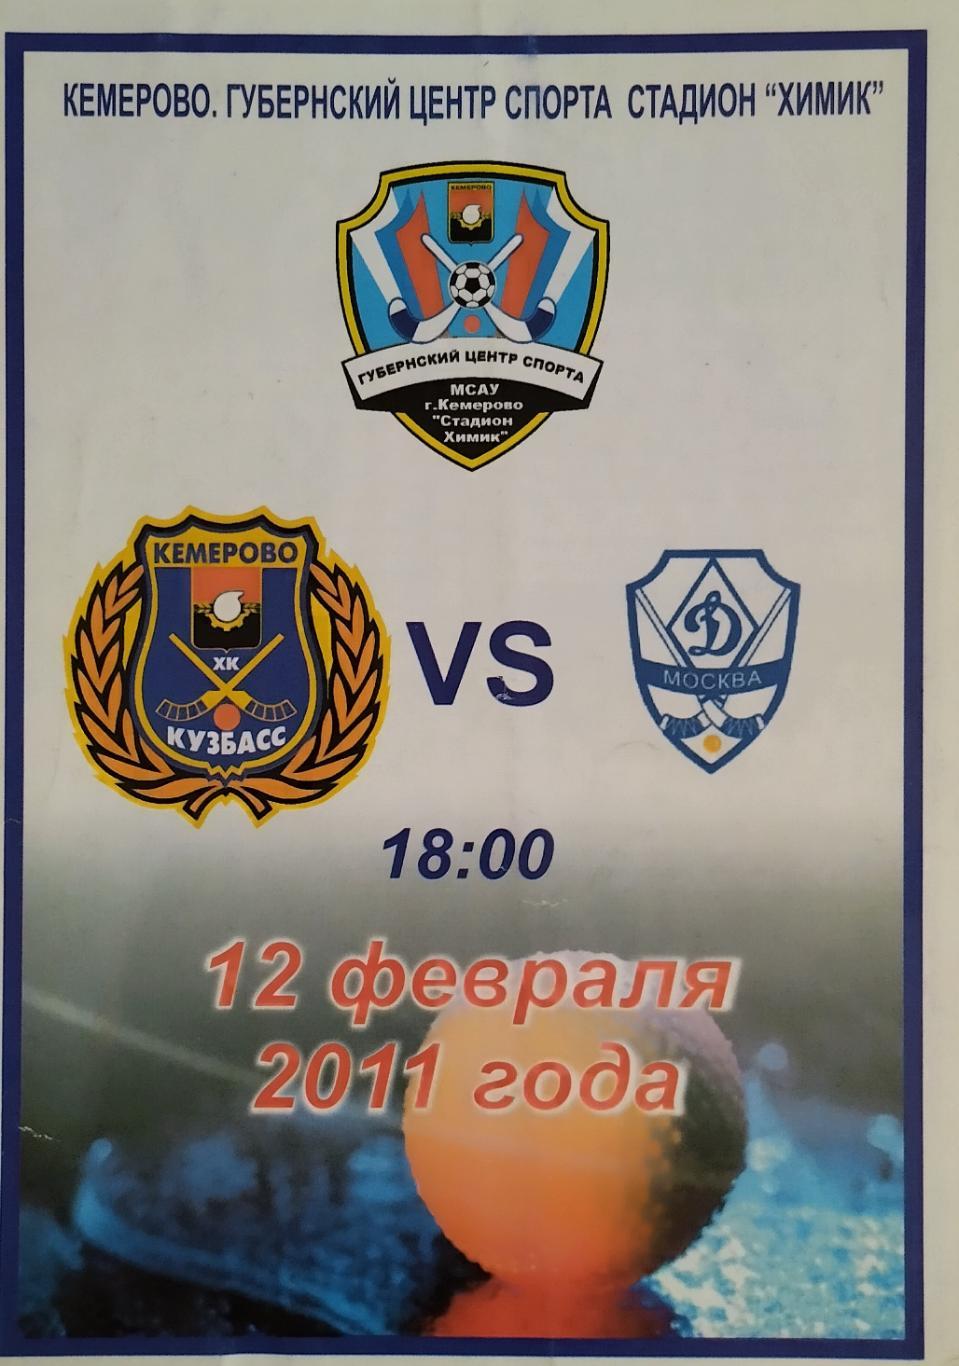 Кузбасс Кемерово - Динамо Москва - 12.02.2011.